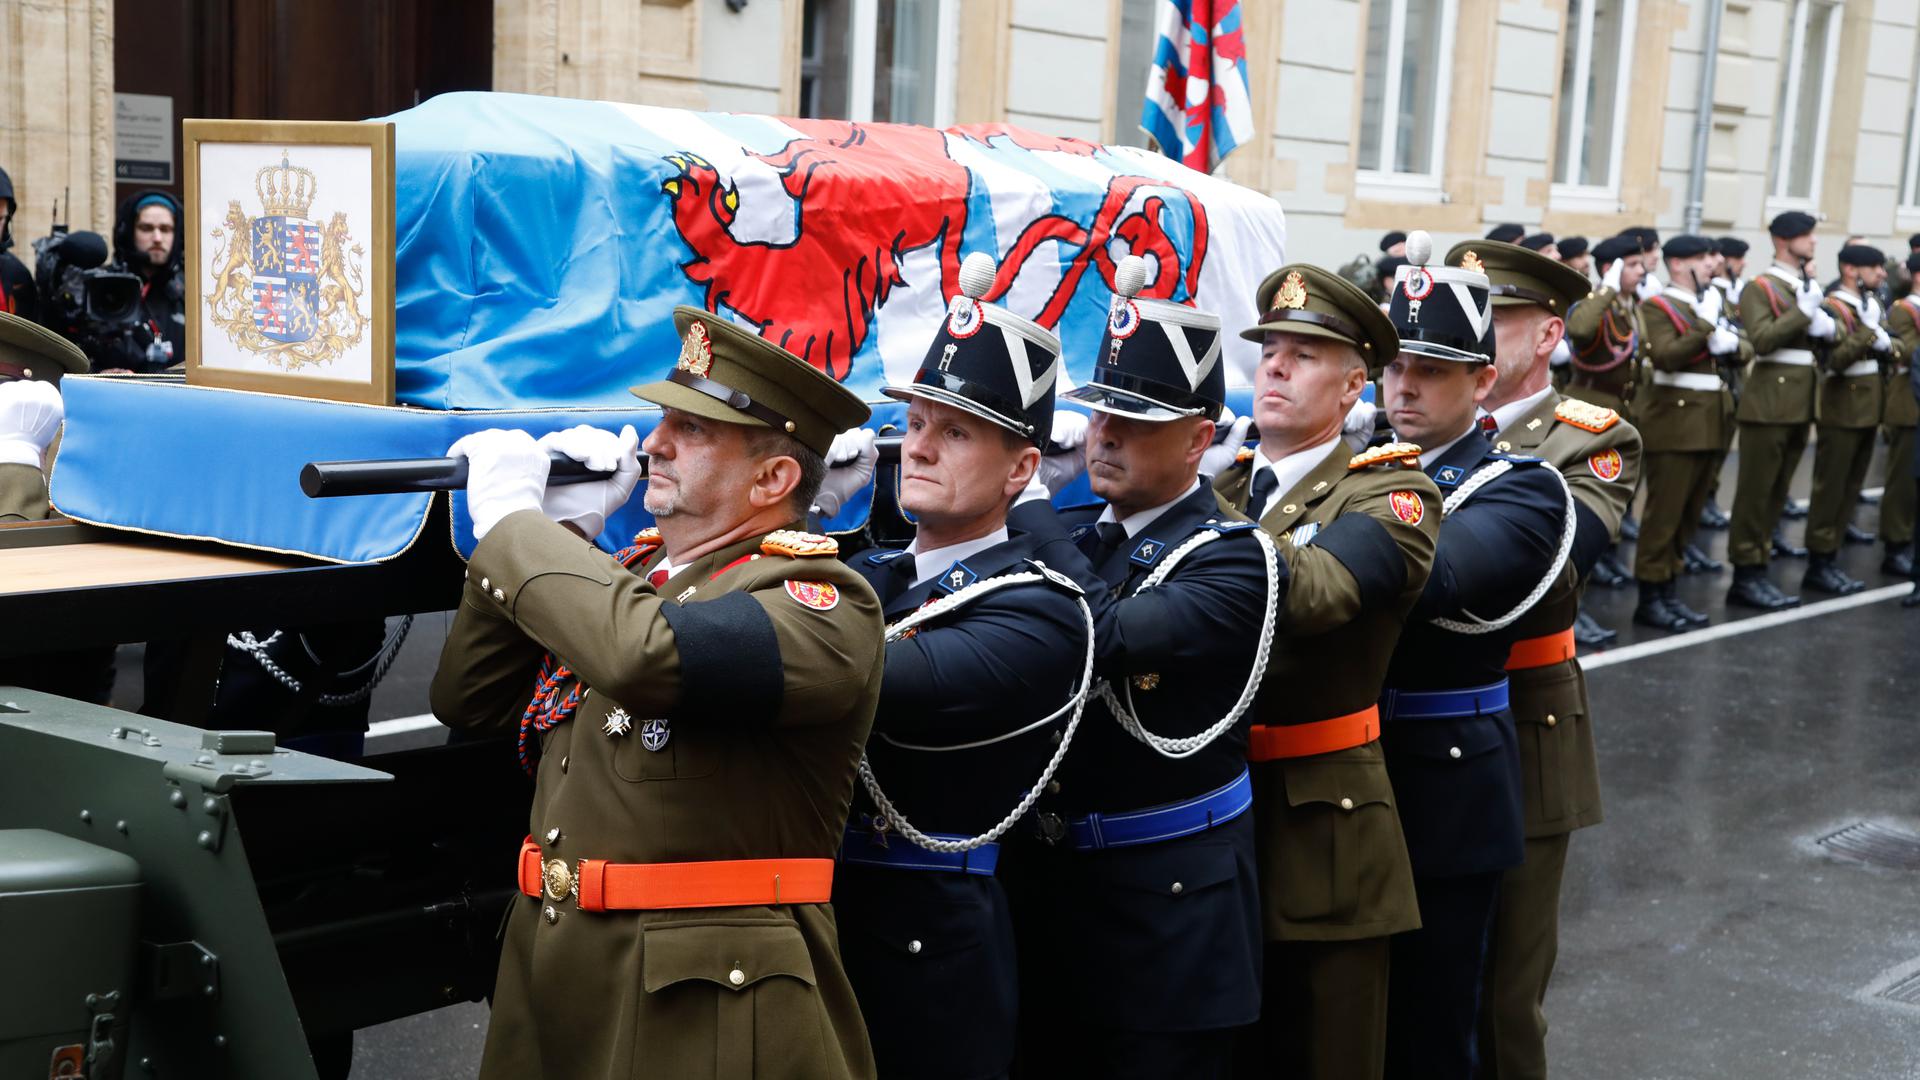 Angehörige der luxemburgischen Armee und der Police grand-ducale heben den Sarg vom Kanonengestell.